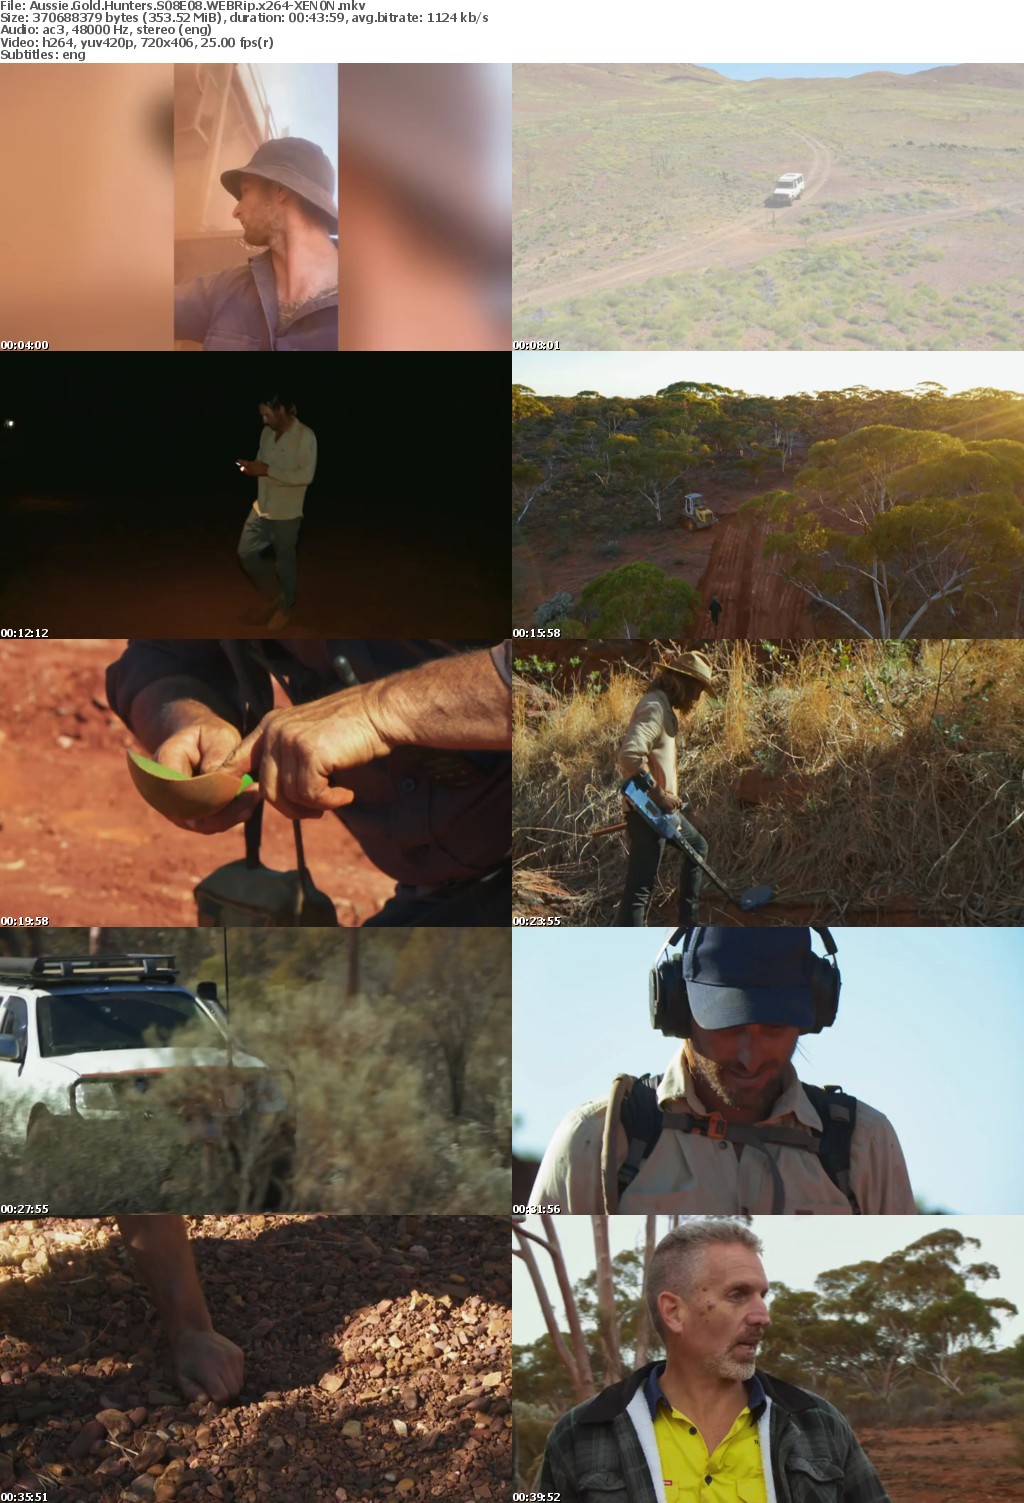 Aussie Gold Hunters S08E08 WEBRip x264-XEN0N